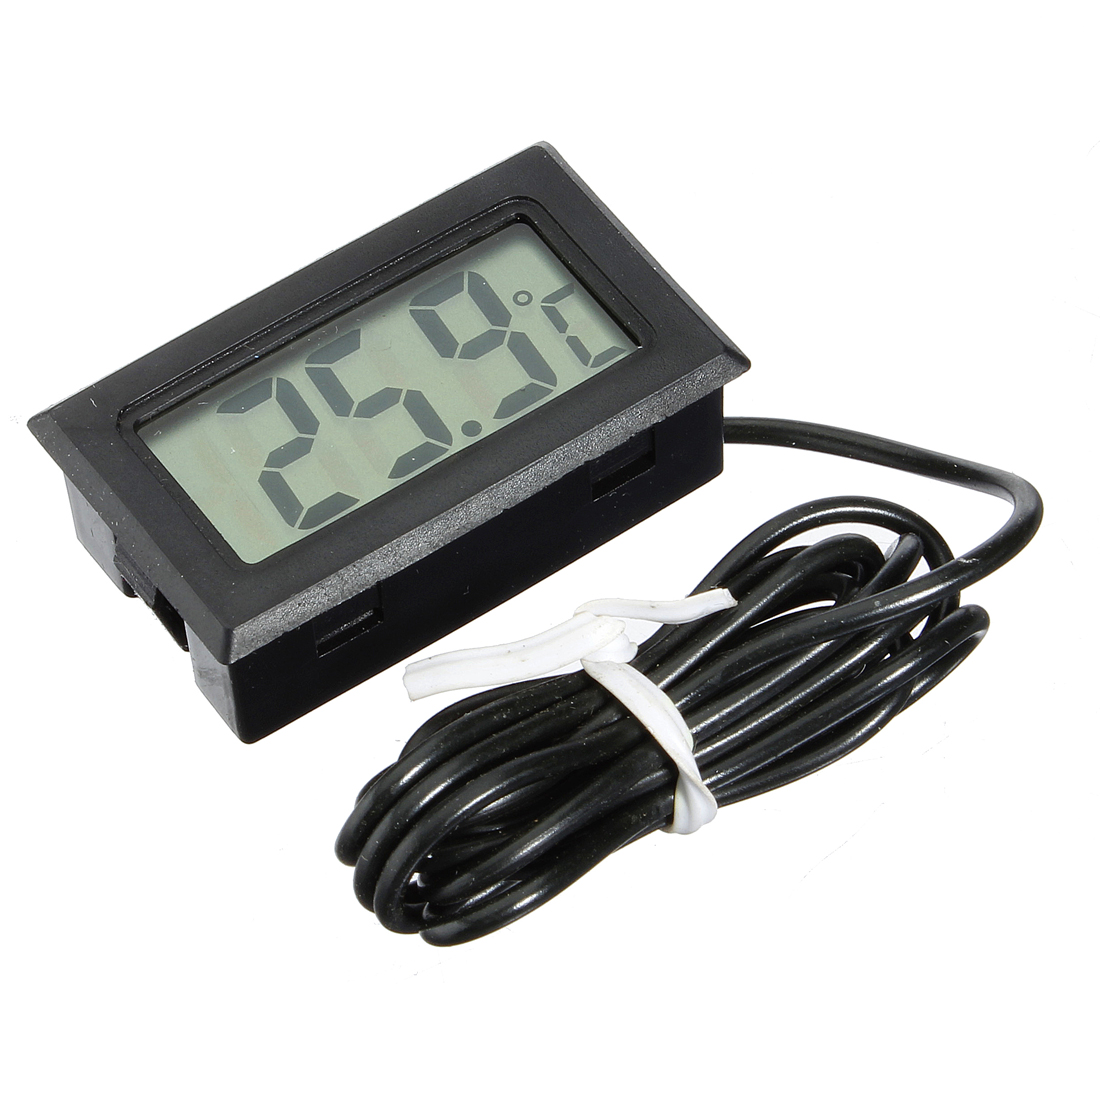 

10Pcs Mini LCD Digital Термометр для Аквариум Температура в холодильнике для холодильника с часовым механизмом 79cm Зонд -50 ° C до 110 ° C